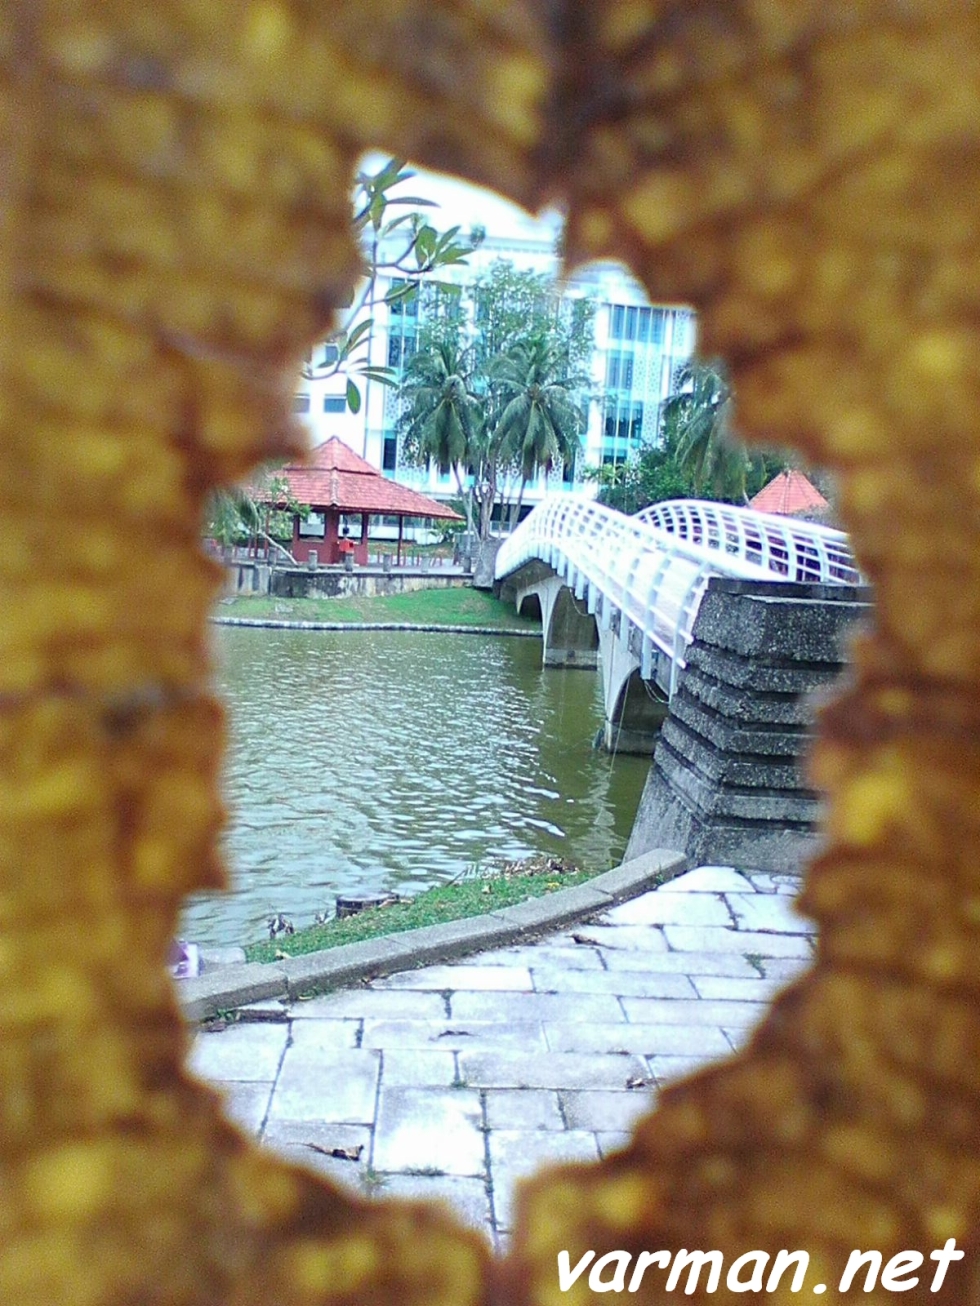 Framing: Shah Alam Lake Garden